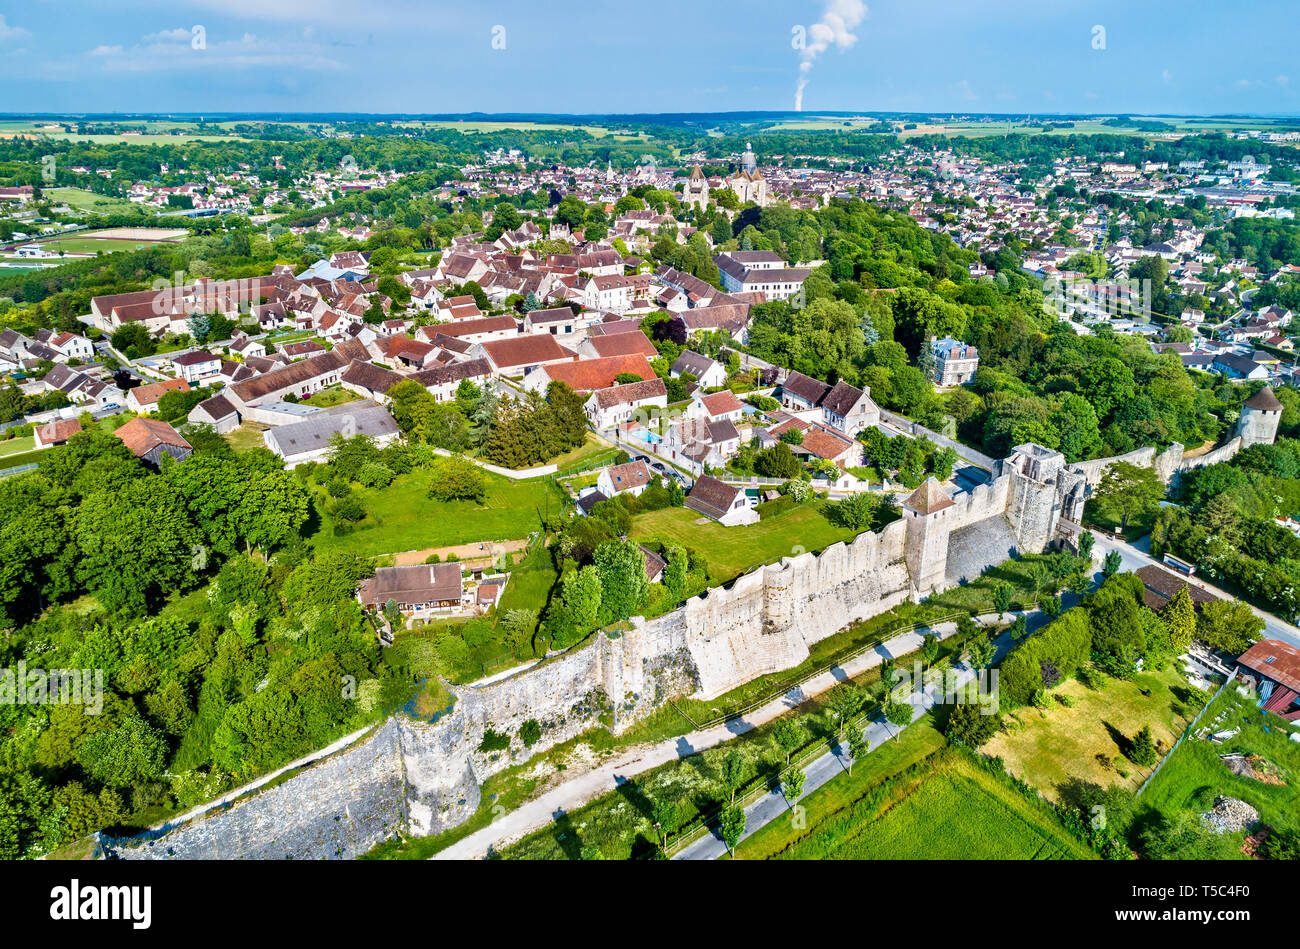 Vue aérienne de Provins, ville de foire médiévale et site du patrimoine mondial de l'UNESCO. Le département de Seine-et-Marne de France Banque D'Images